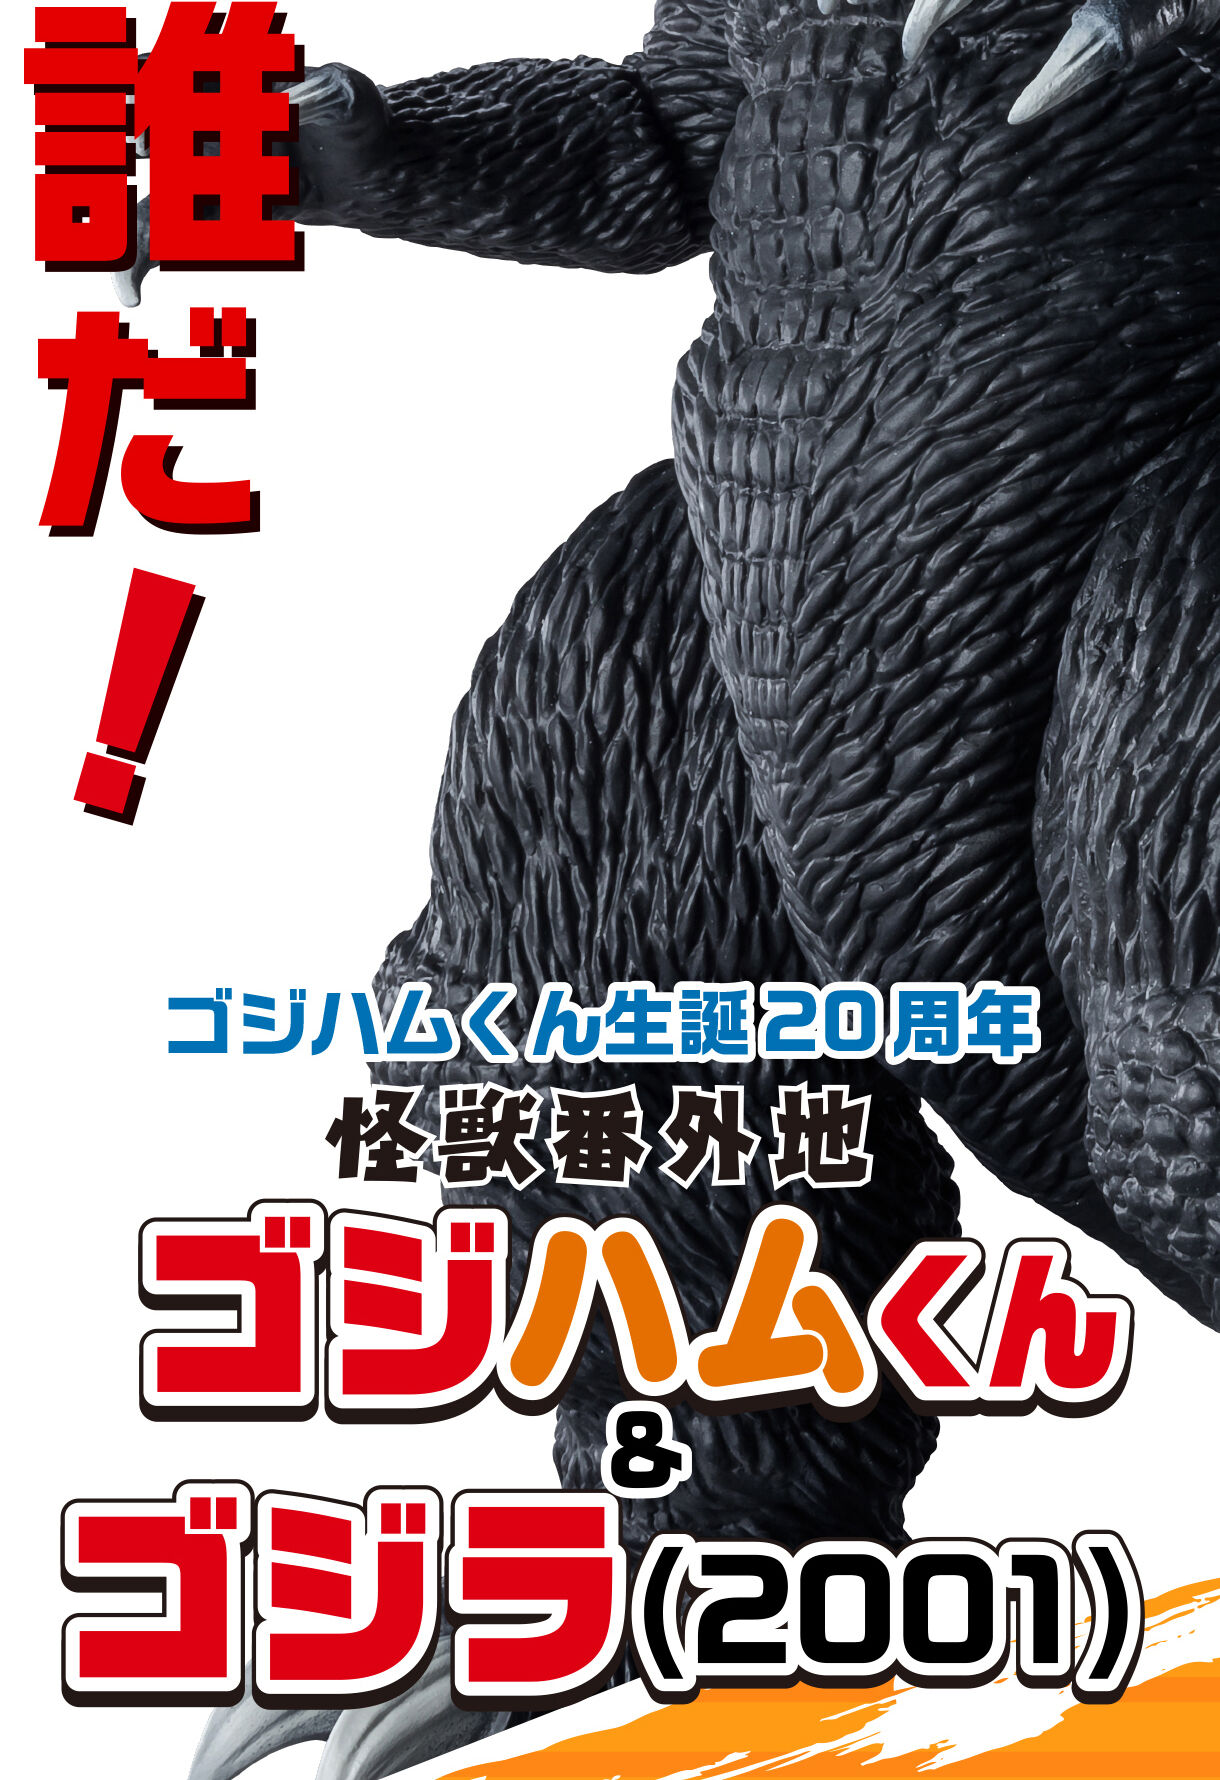 怪獣番外地 ゴジハムくん & ゴジラ(2001) | ゴジラシリーズ フィギュア